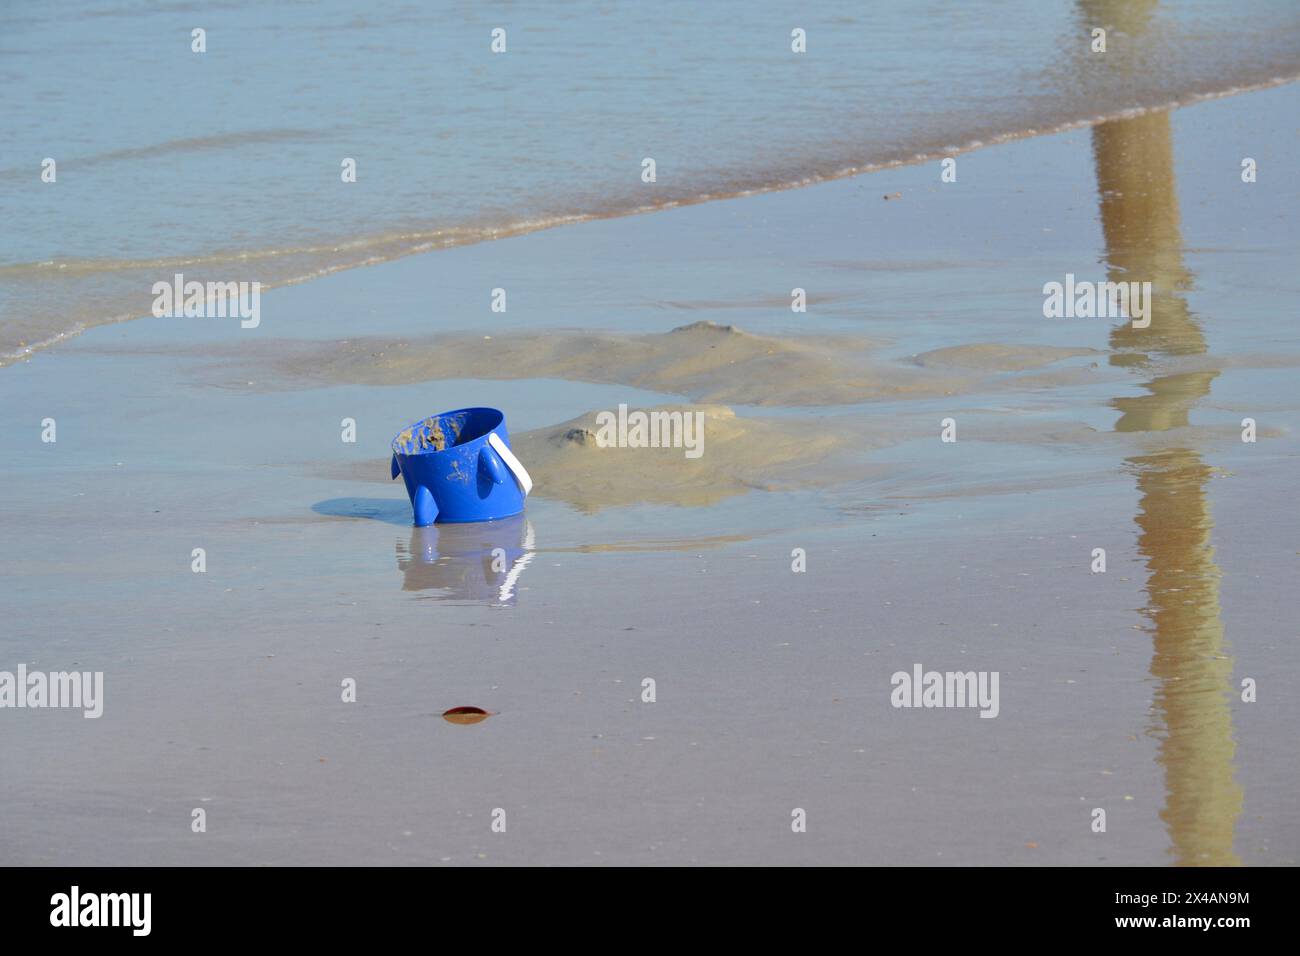 Un seau bleu abandonné repose, à moitié immergé dans le sable près du bord de l'océan, tandis que les vagues déferlent, créant des reflets sur le sable des plages. Banque D'Images